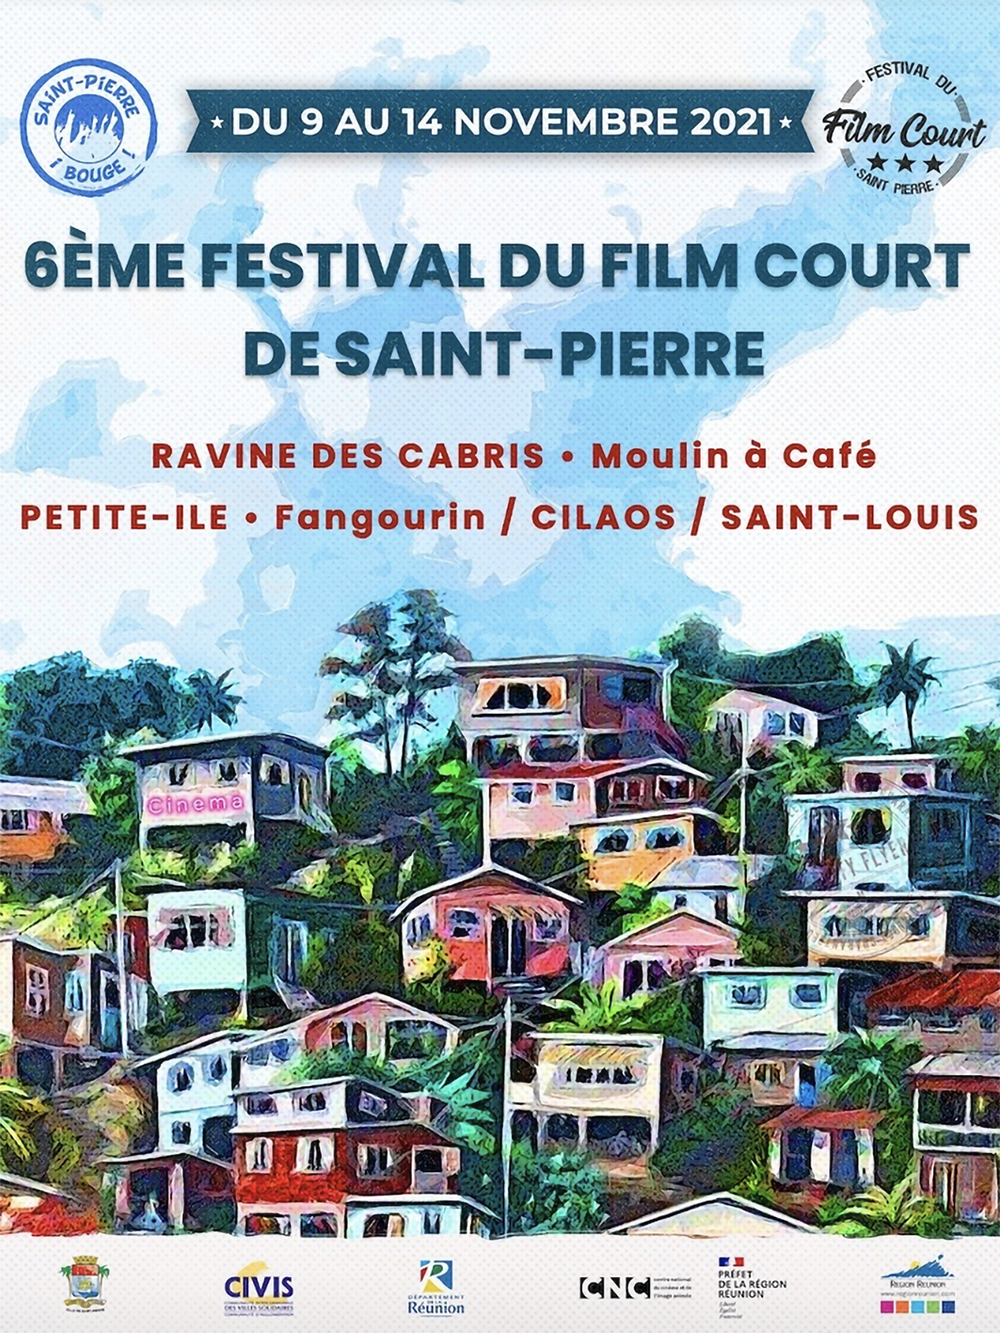 Festival du Film Court de Saint-Pierre du 9 au 14 novembre